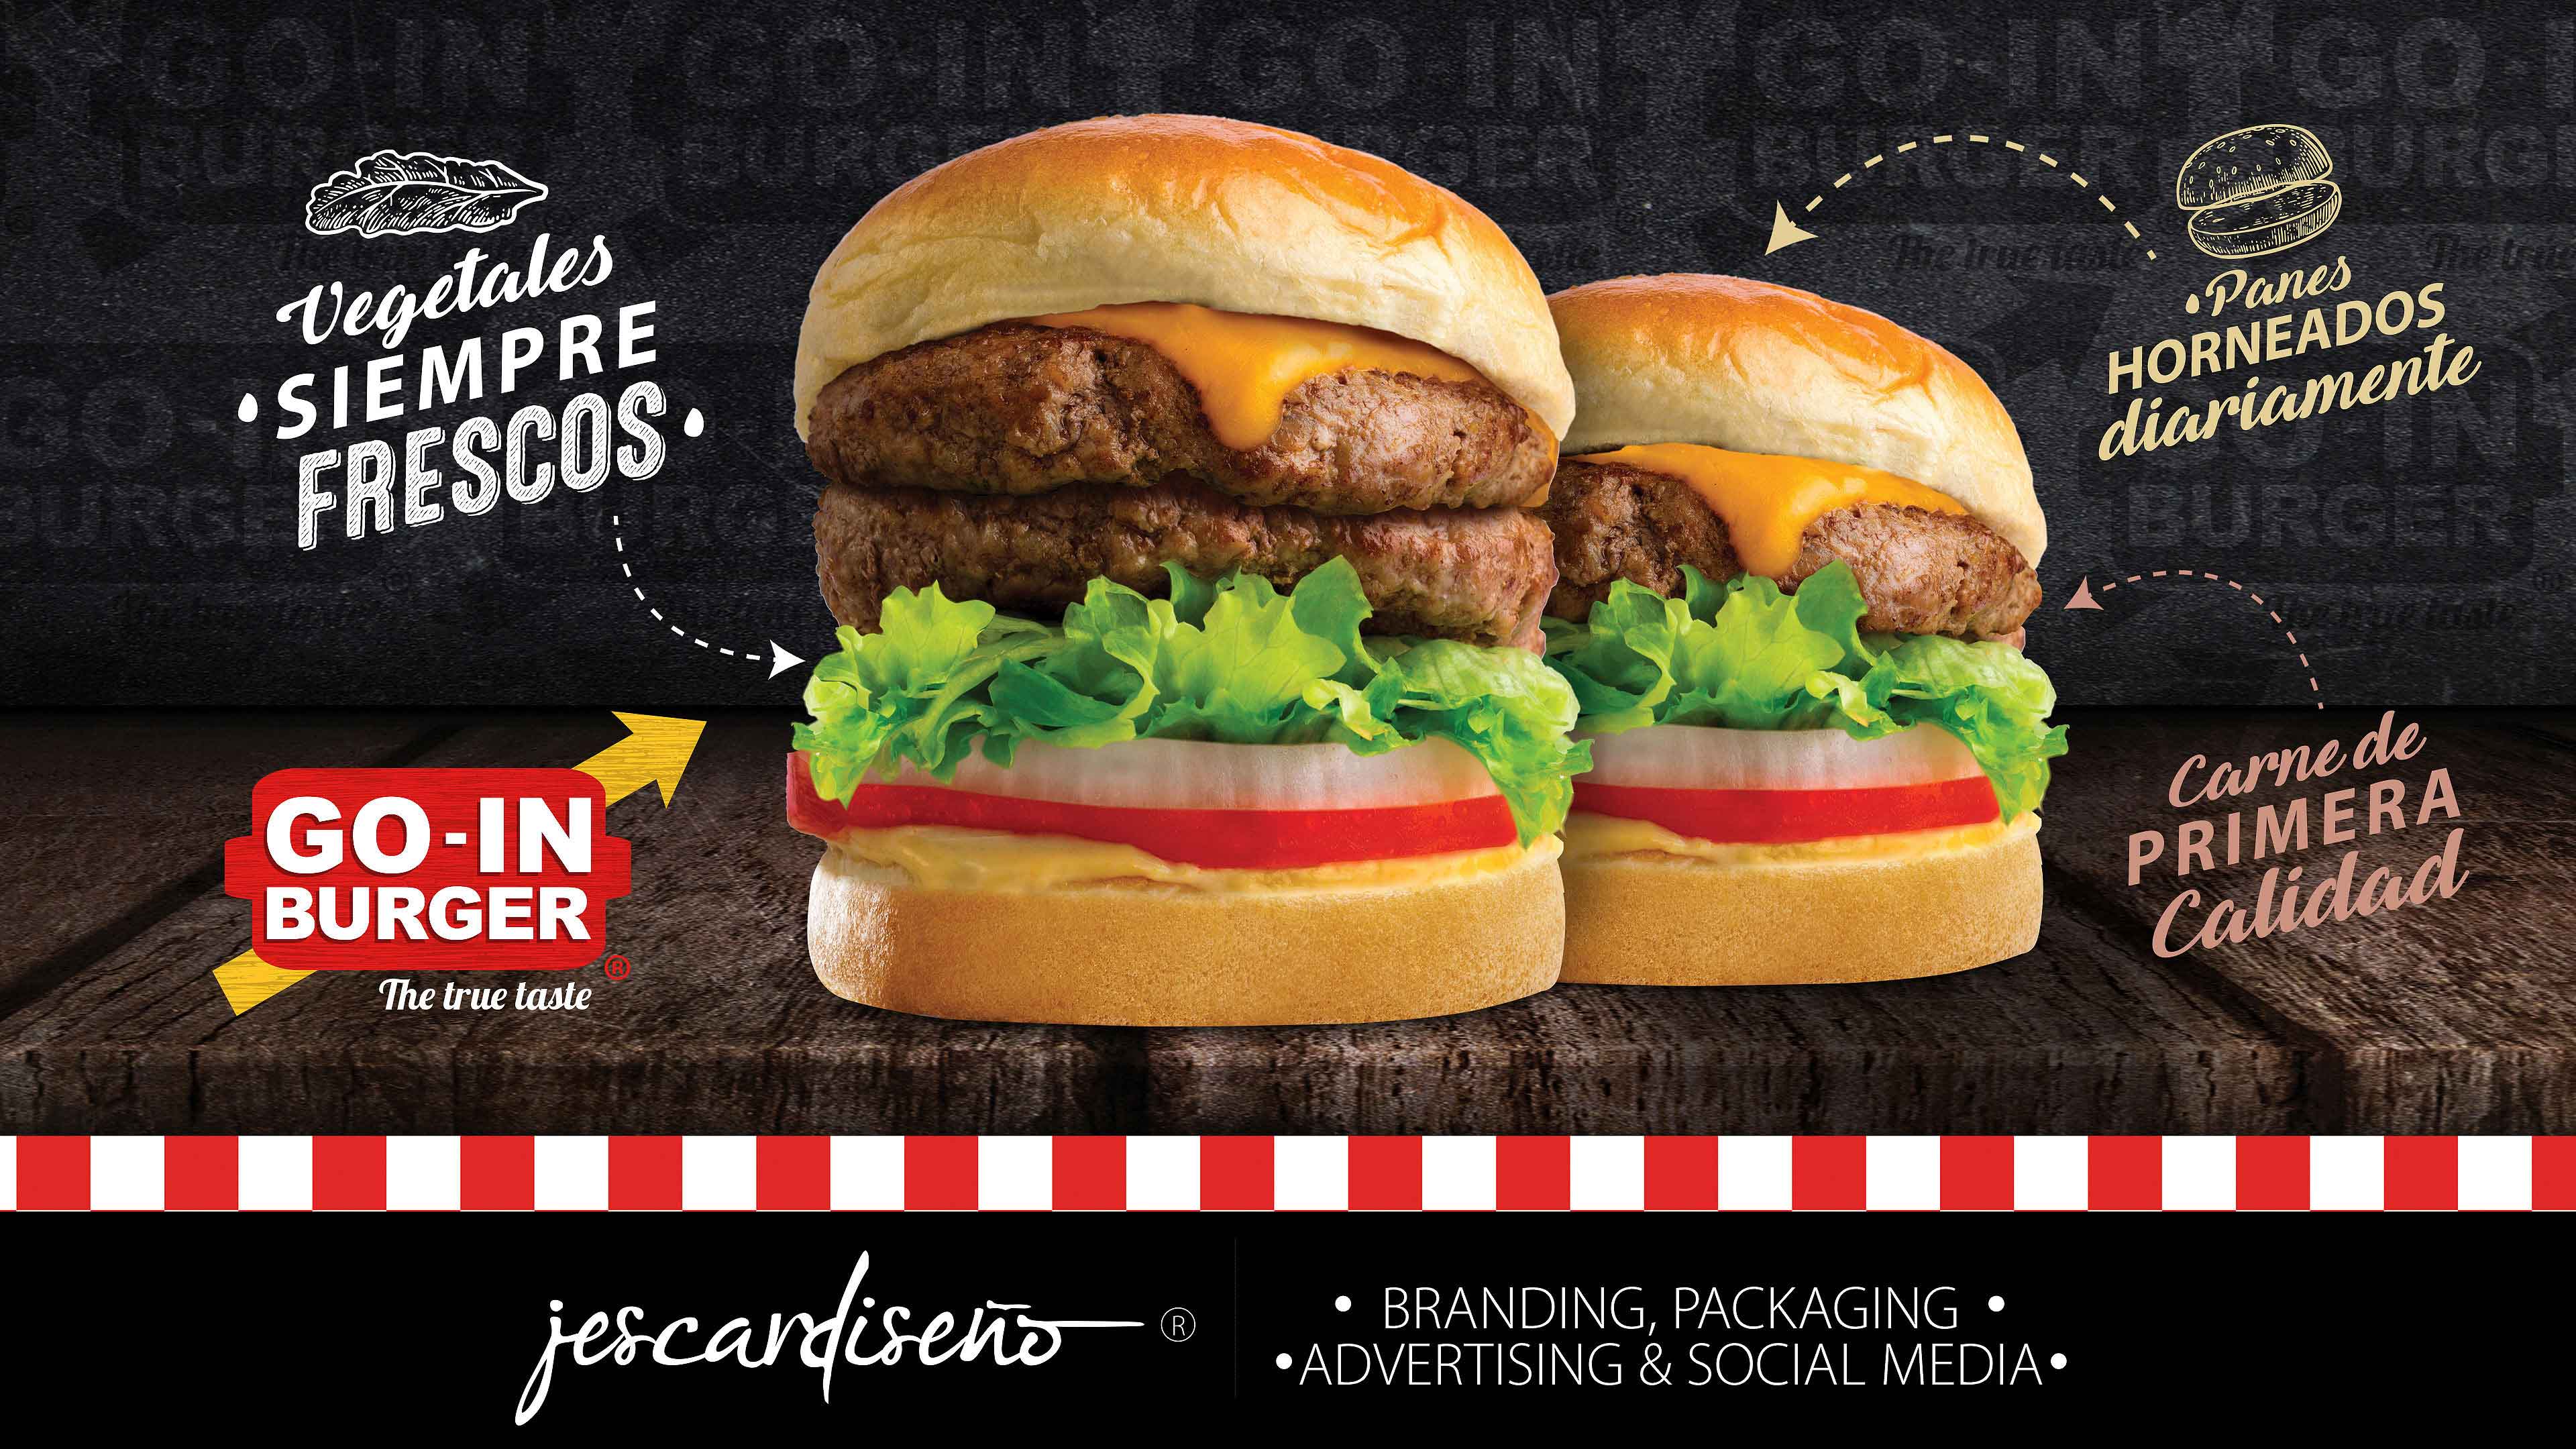 goinburger hamburguesas packaging branding jescardiseno v5